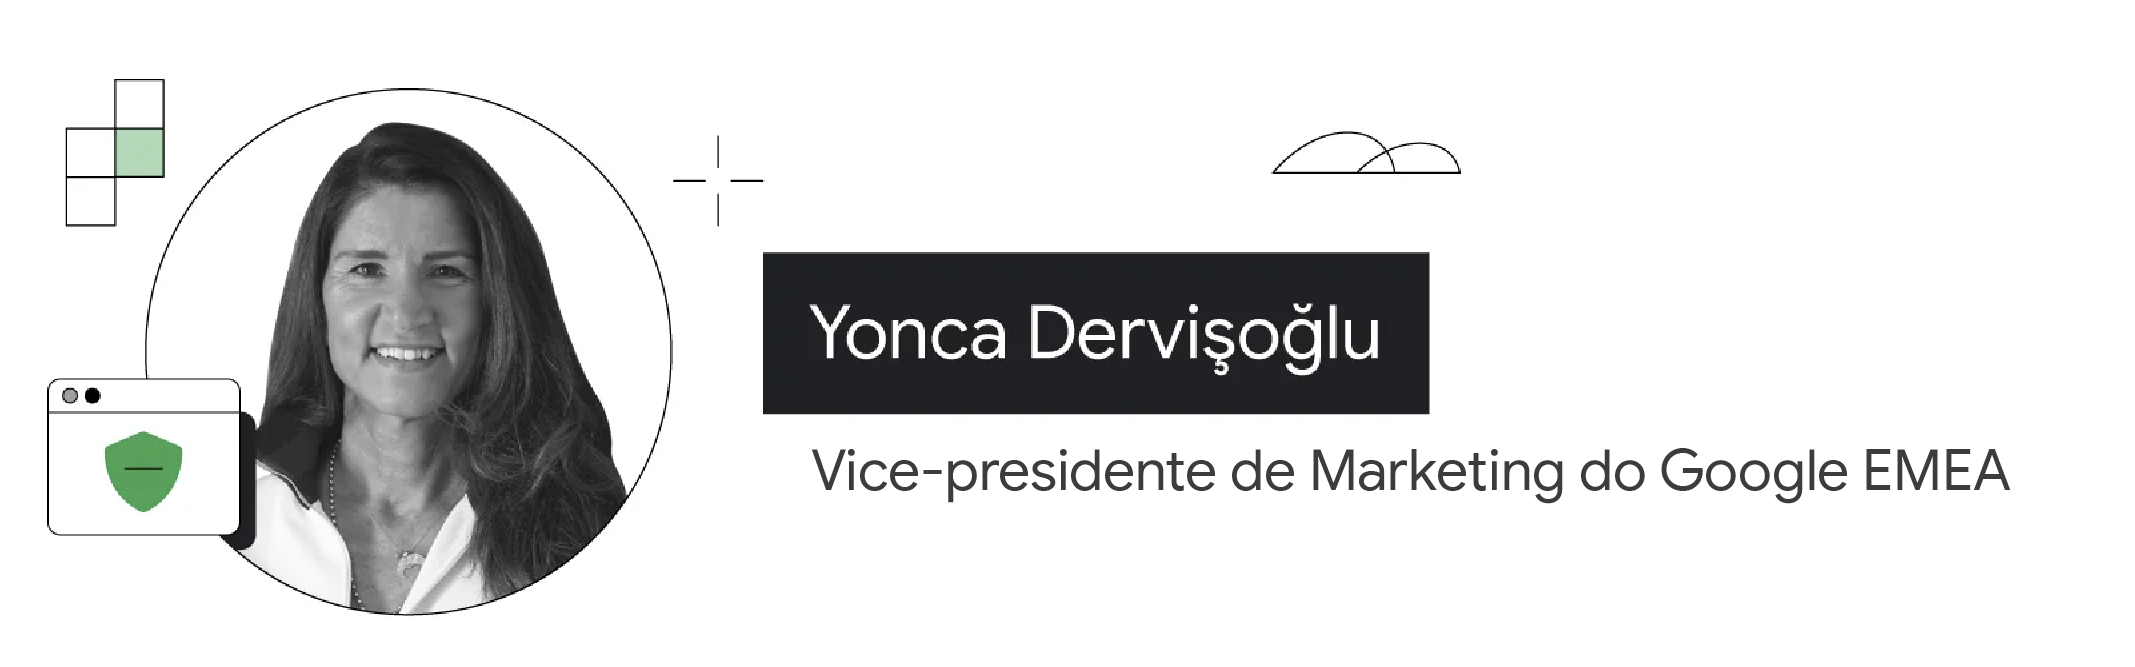 Em destaque, o retrato de Yonca Dervi?o?lu, vice-presidente de Marketing do Google EMEA. Ela sorri e tem os cabelos na altura dos ombros, usa colares e uma camisa branca.